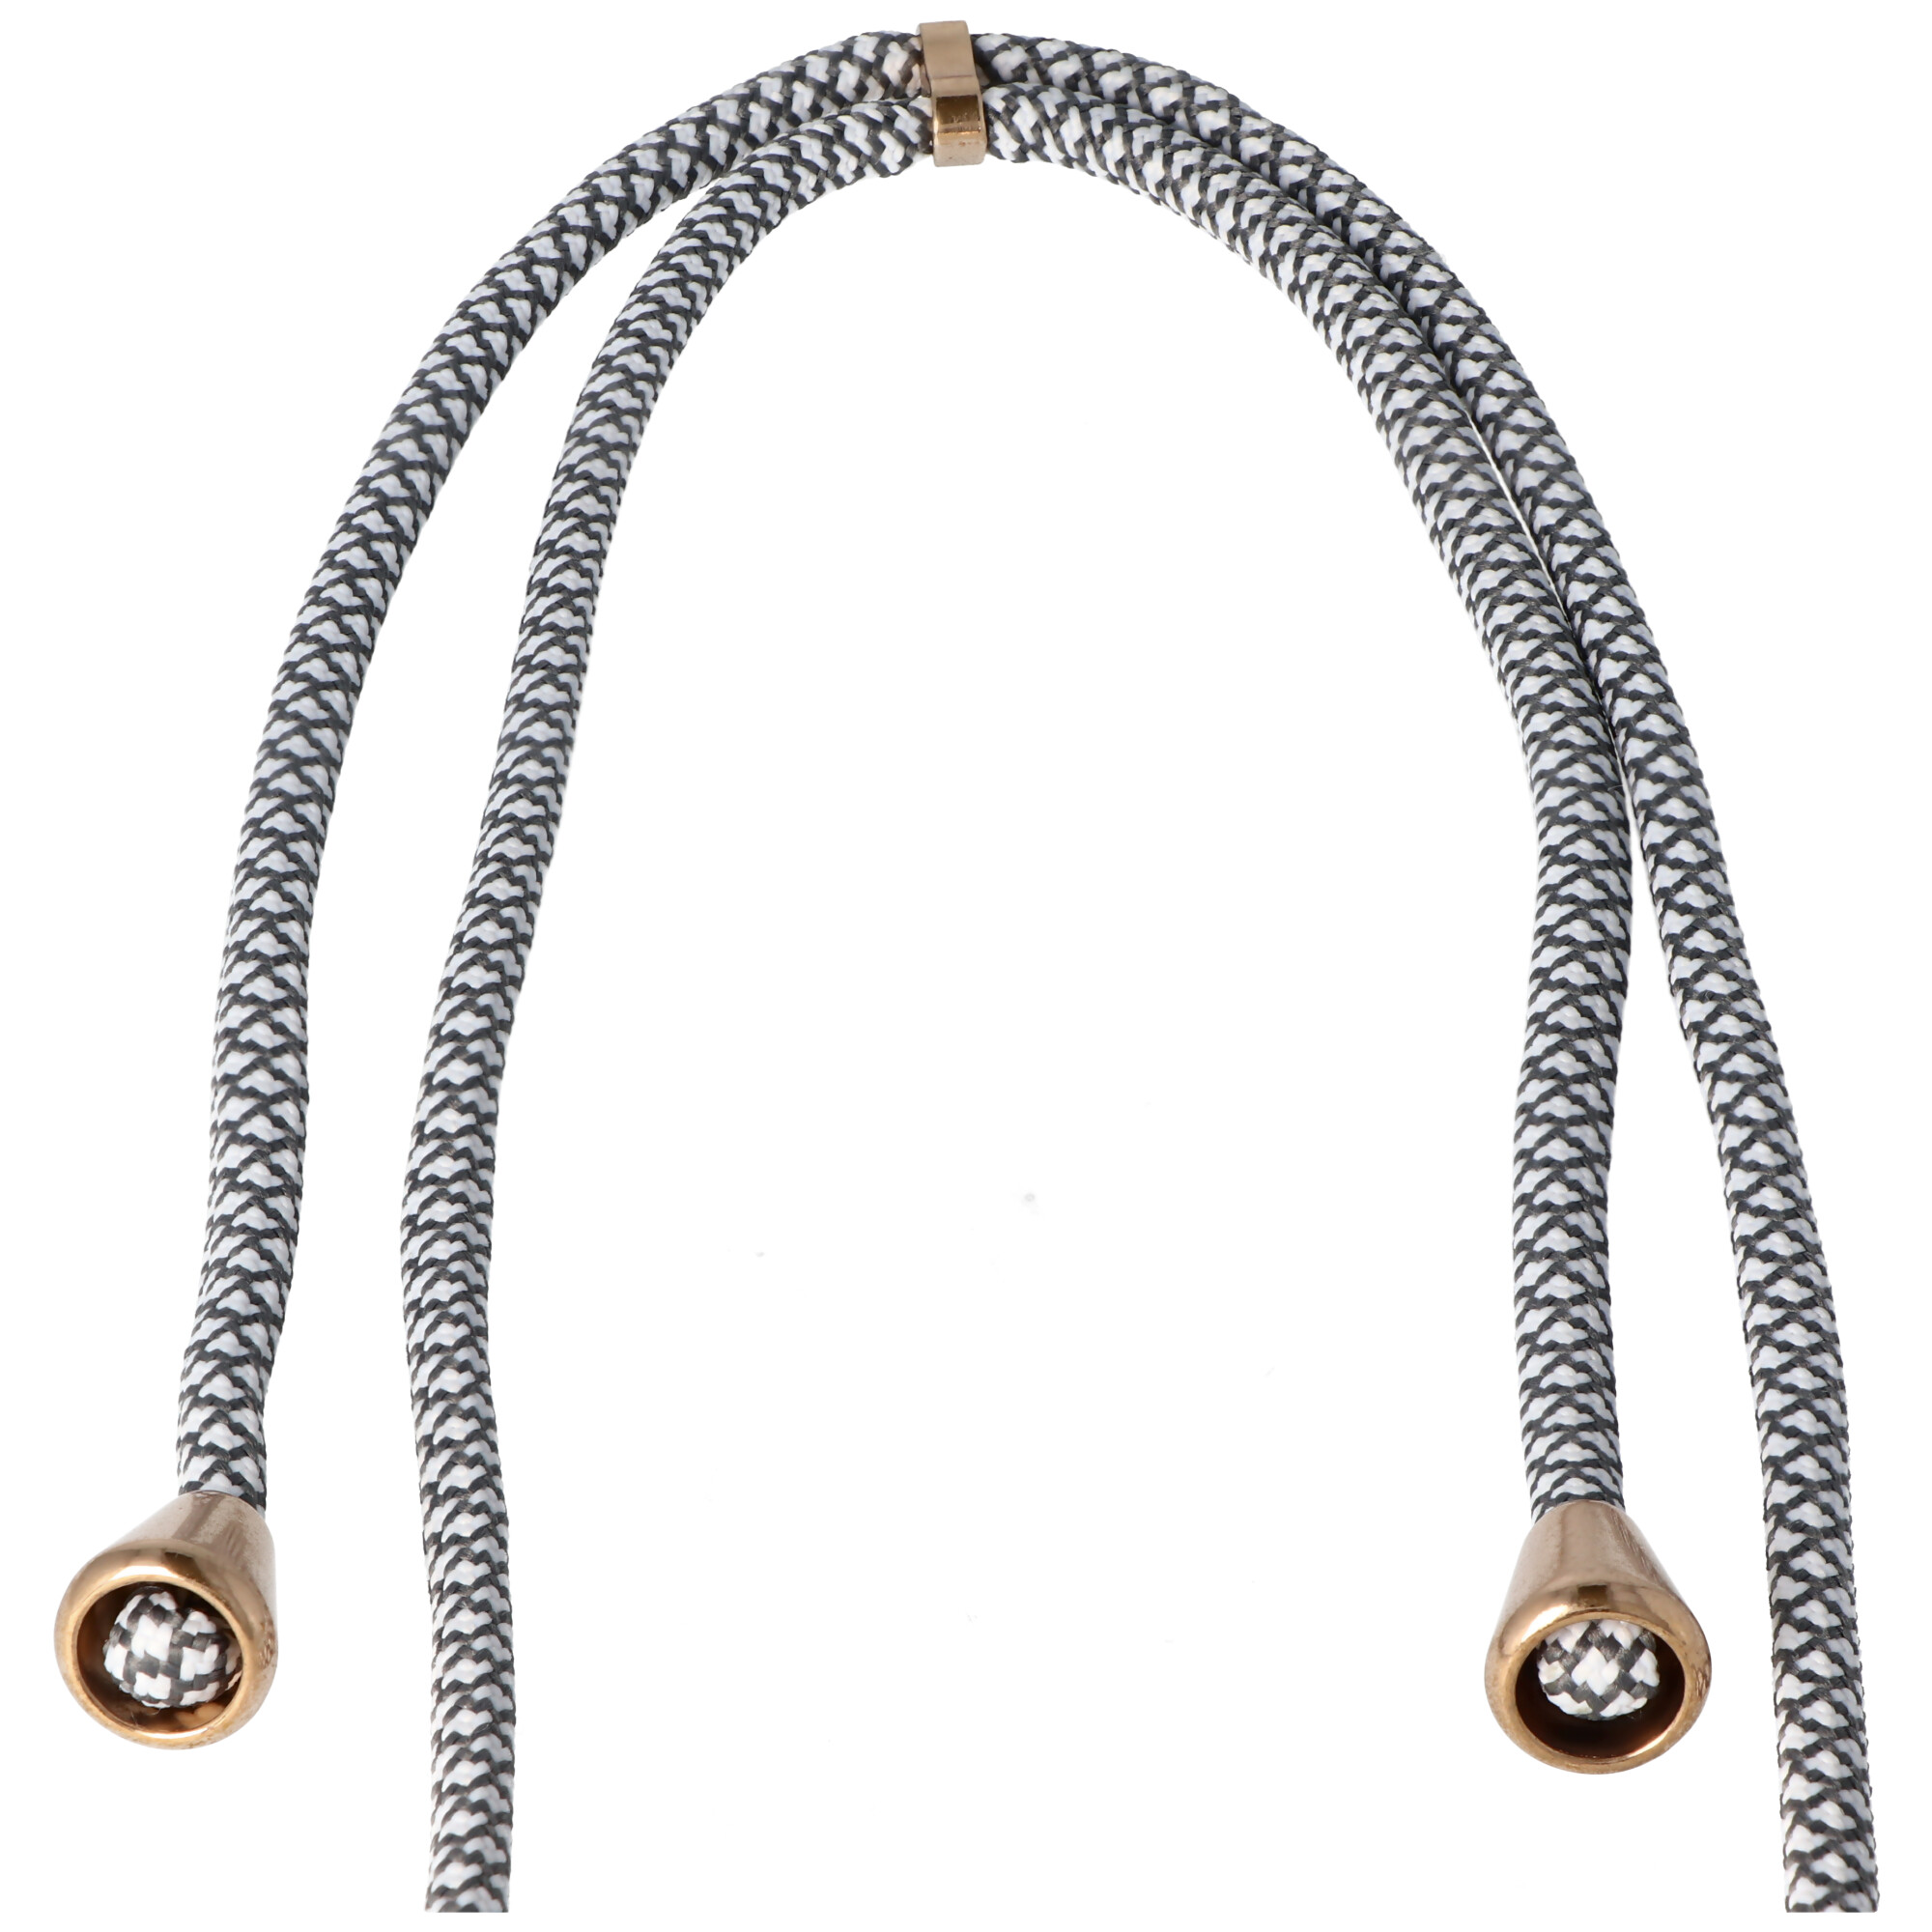 Necklace Case passend für Huawei P30 PRO, Smartphonehülle mit Kordel grau,weiß zum Umhängen